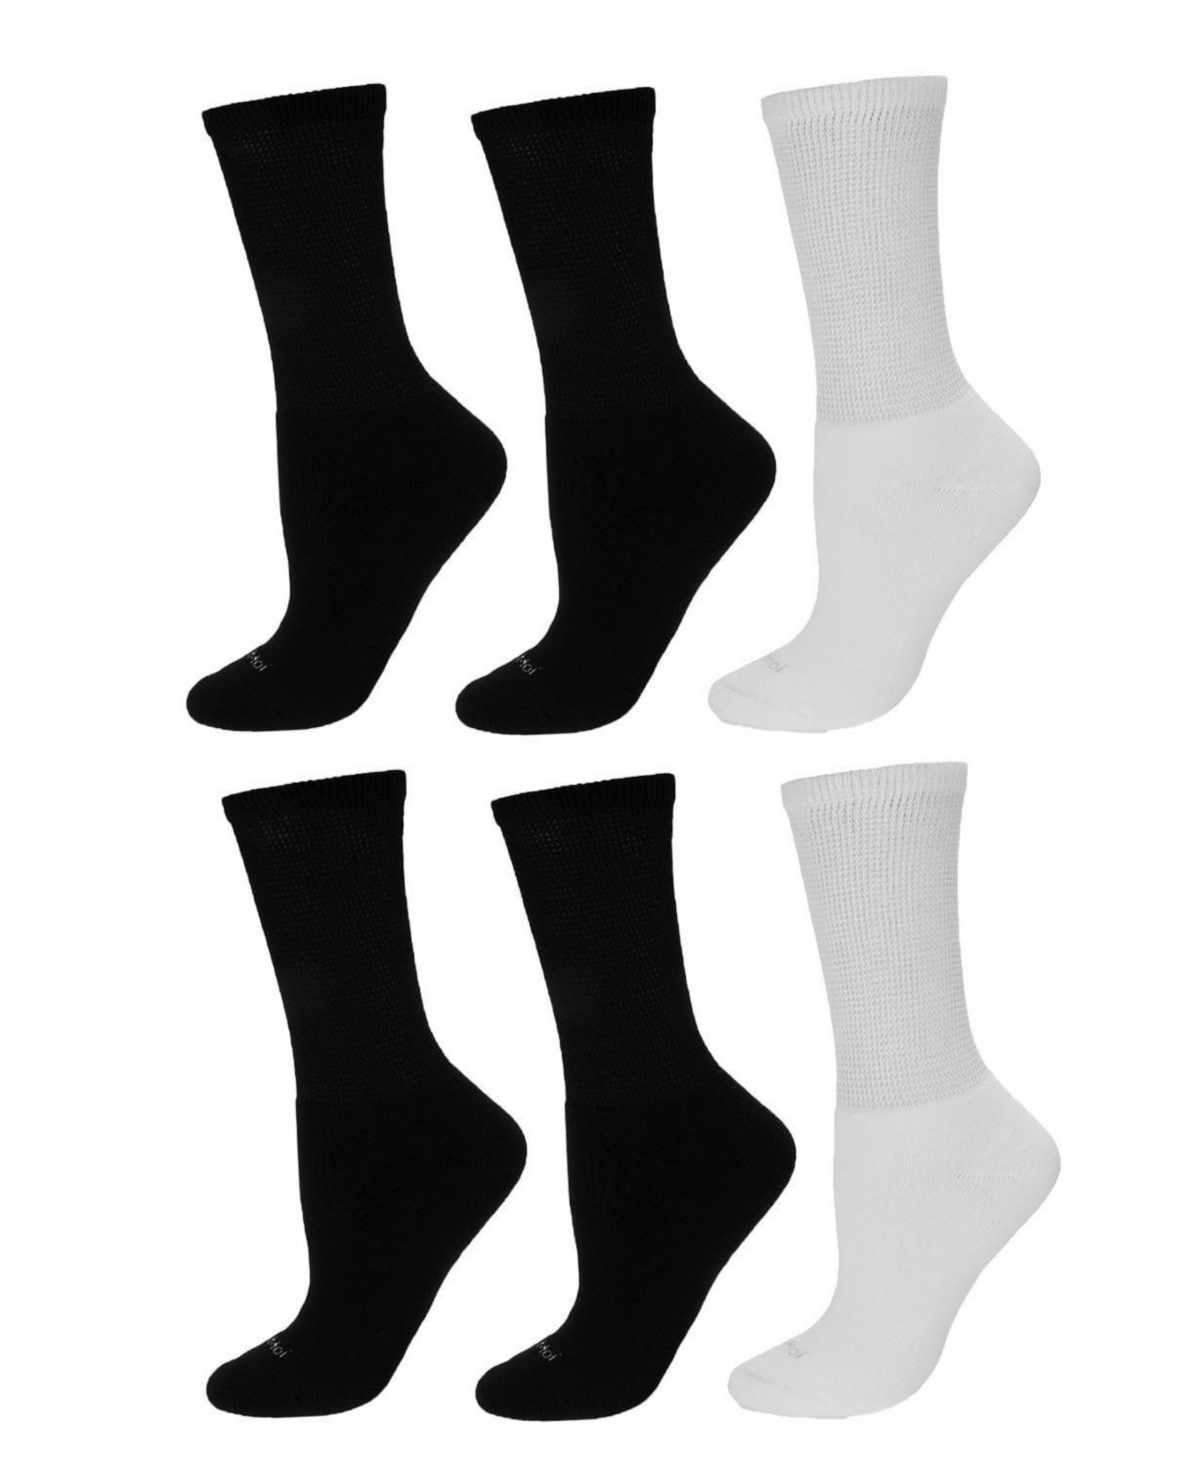 Men's Diabetic Full Cushion Quarter 6 Pair Pack Socks - Diabetic-Black-Black-white